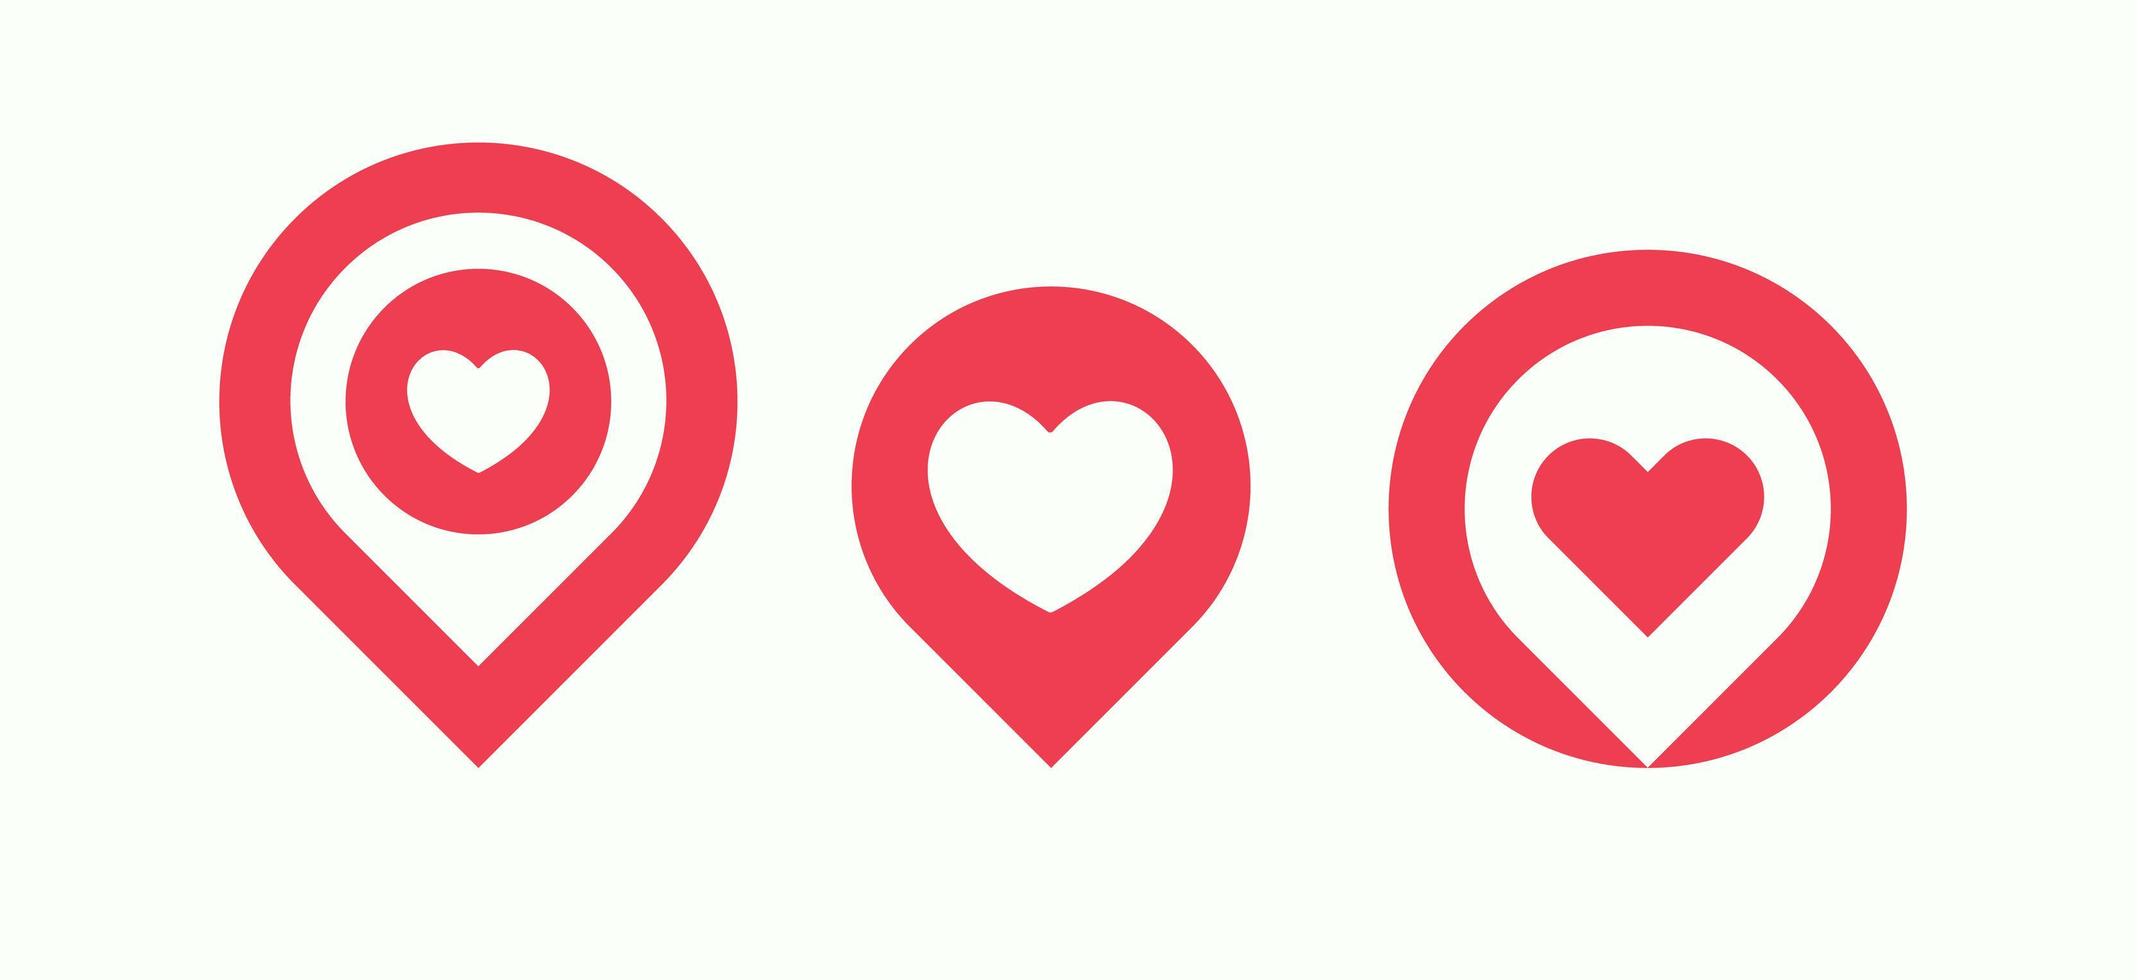 favoriete plaatsen icon set, geliefde plaatsen pin collectie, liefde locatie aanwijzer met hart, geïsoleerde vector logo sjabloon.